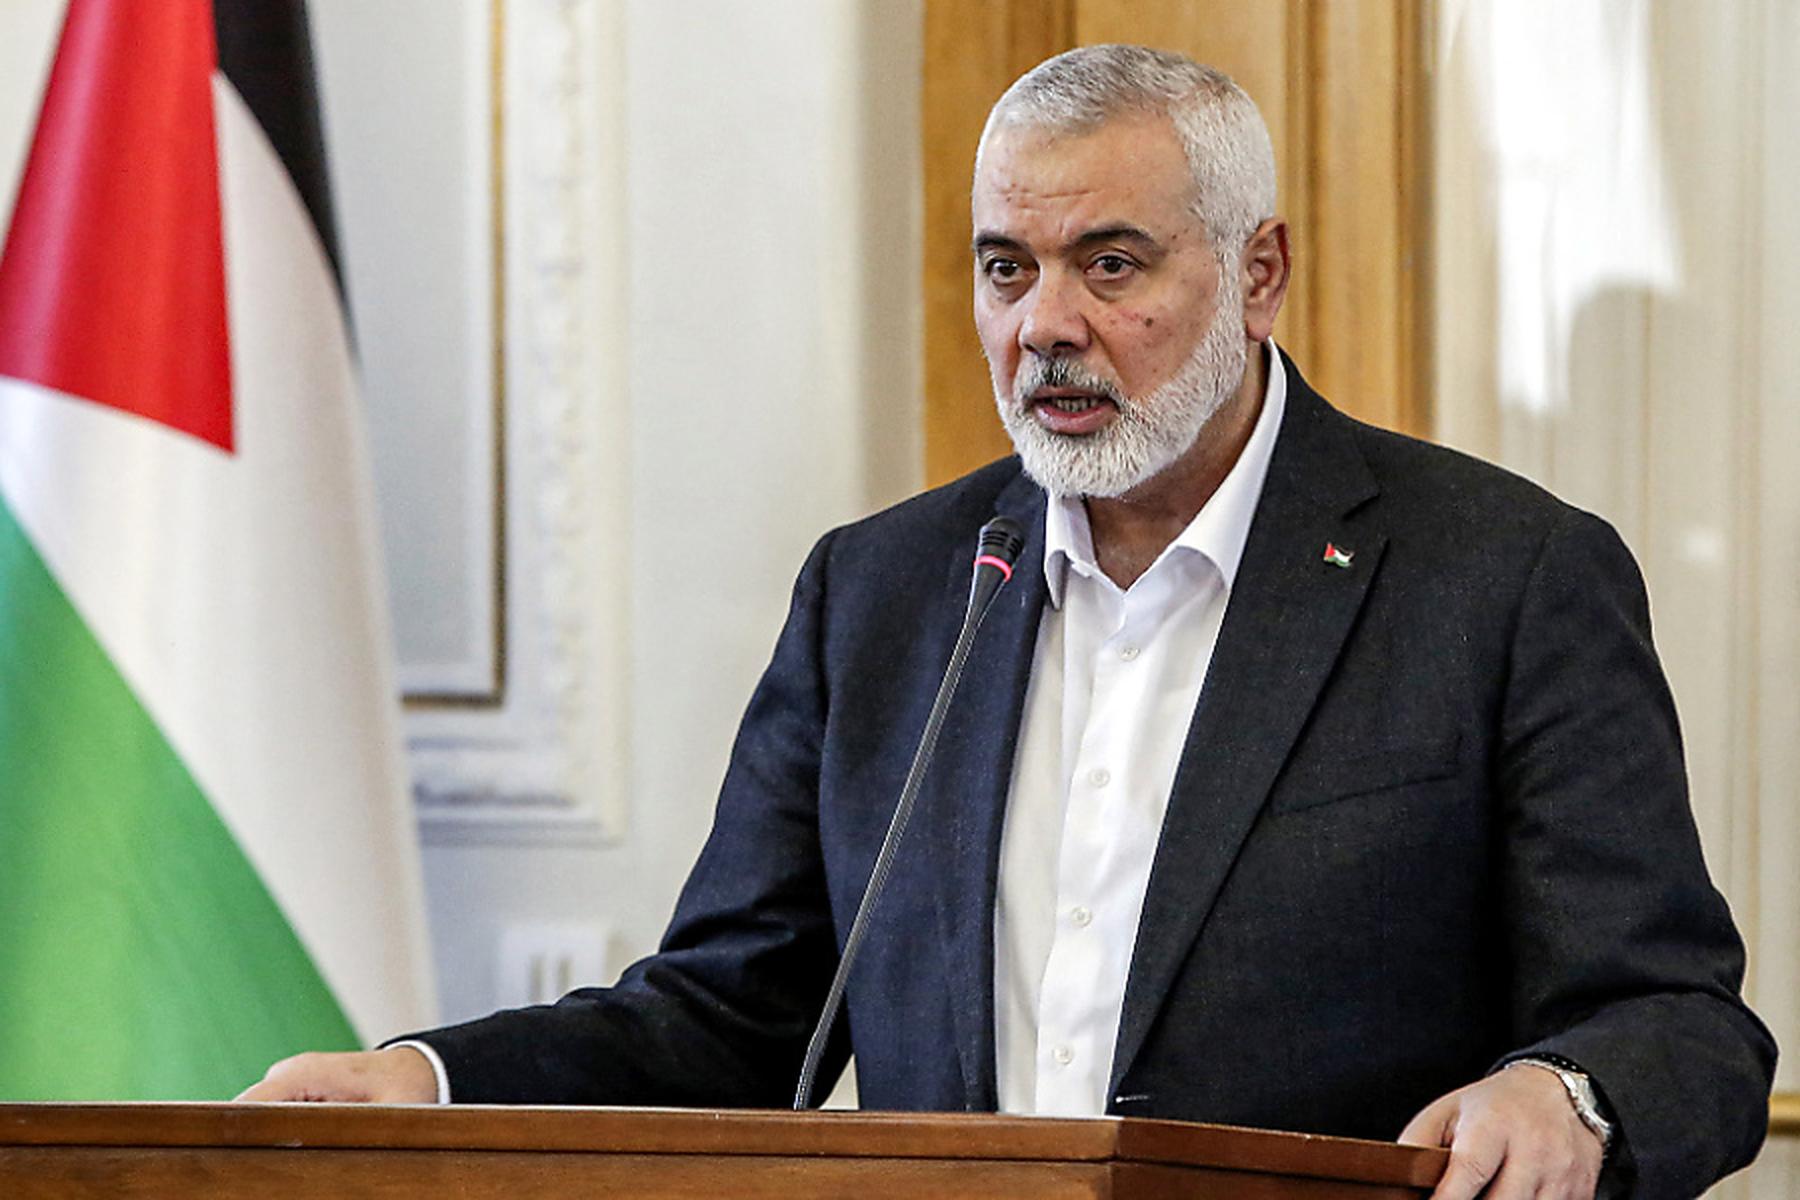 In eigener Residenz: Offizielles Statement: Hamas-Führer Ismail Haniyeh im Iran getötet